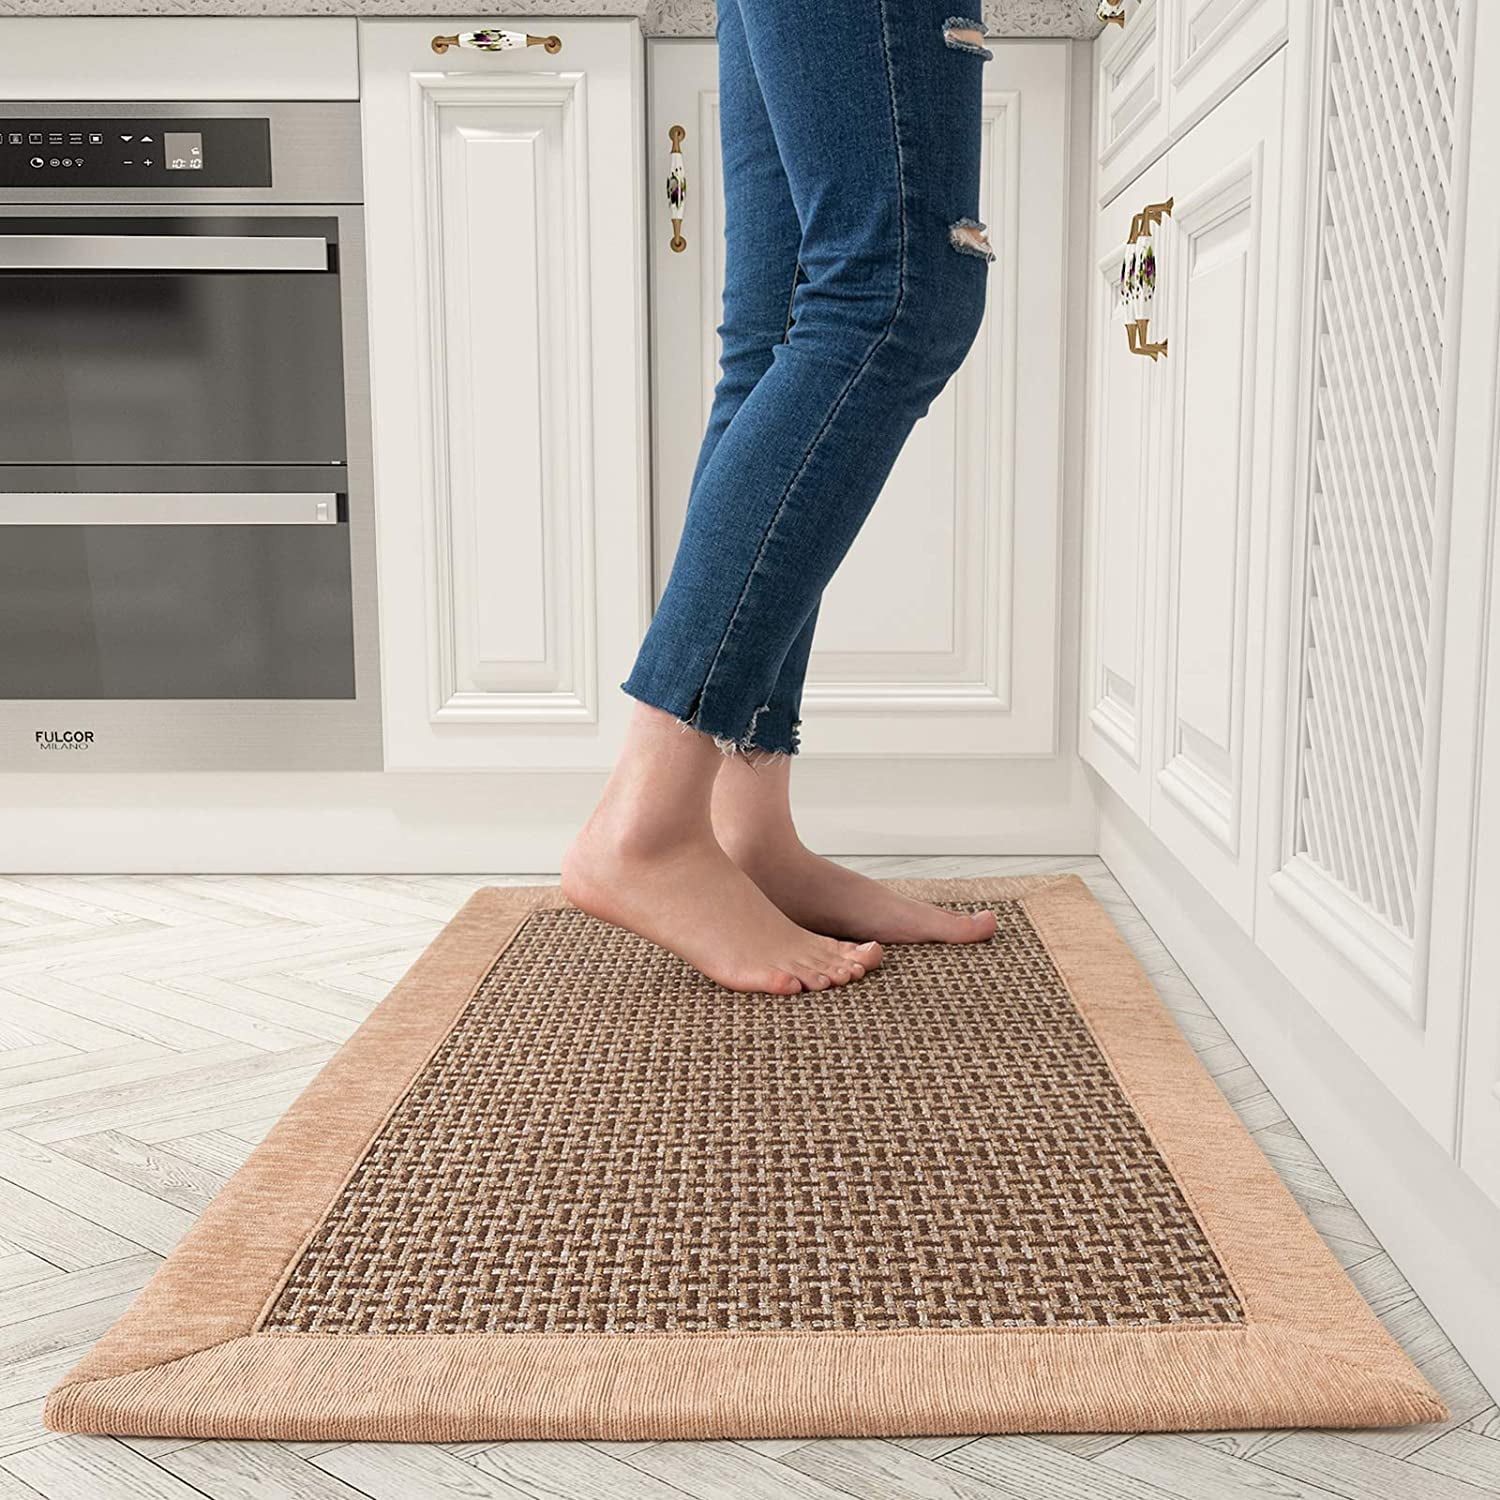 Kitchen Non-slip Waterproof Floor Rug Kitchen Toilet Mat Doormat Carpet Cover 